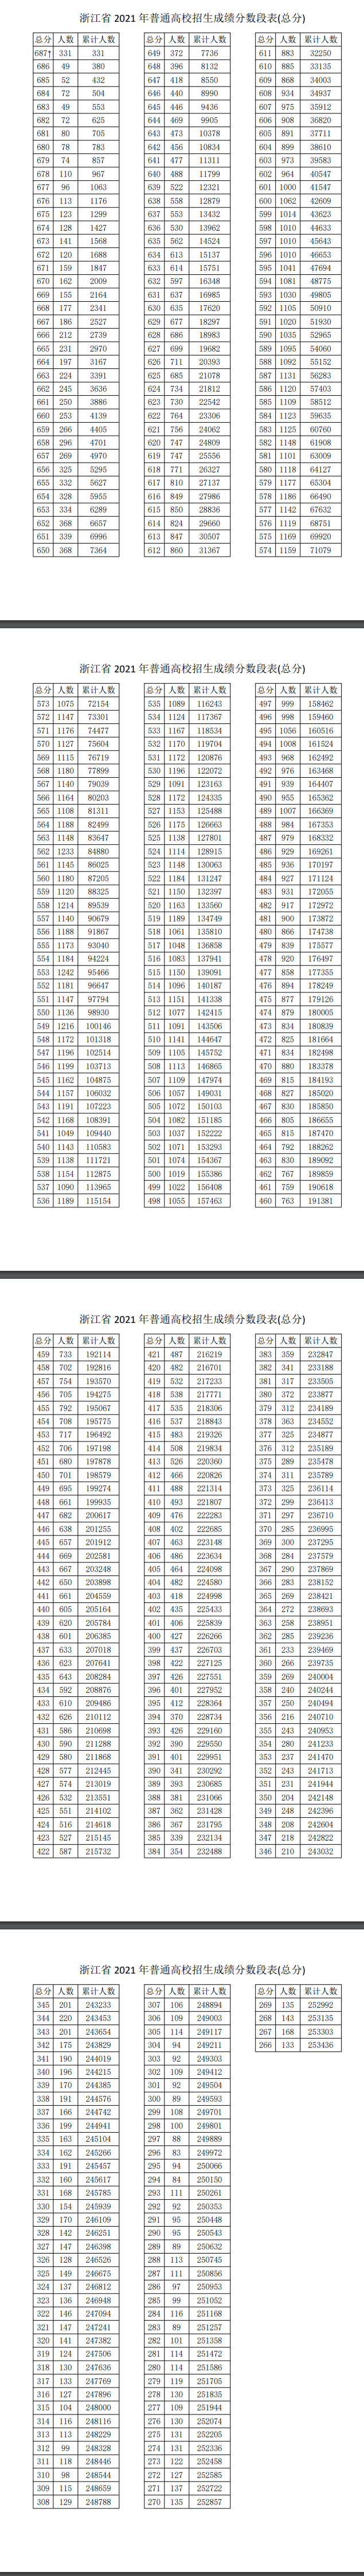 2022浙江高考一分一段表预测一览